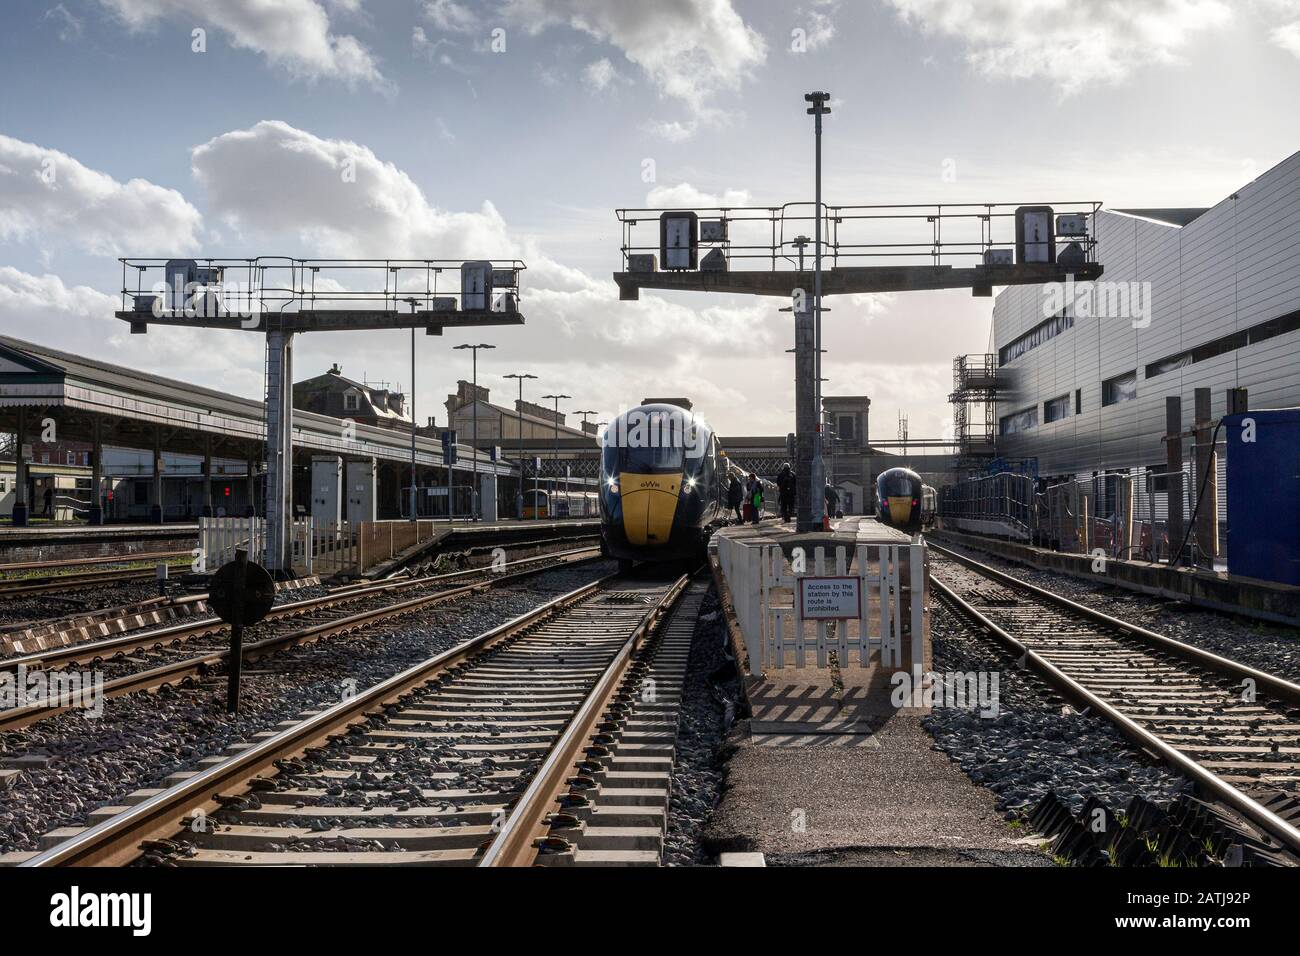 St Davids stazione ferroviaria Exeter, Foto stazione ferroviaria, Foto stazione della metropolitana, Foto stazione, Foto persone, Londra - Foto Inghilterra, Foto Regno Unito, Foto Stock